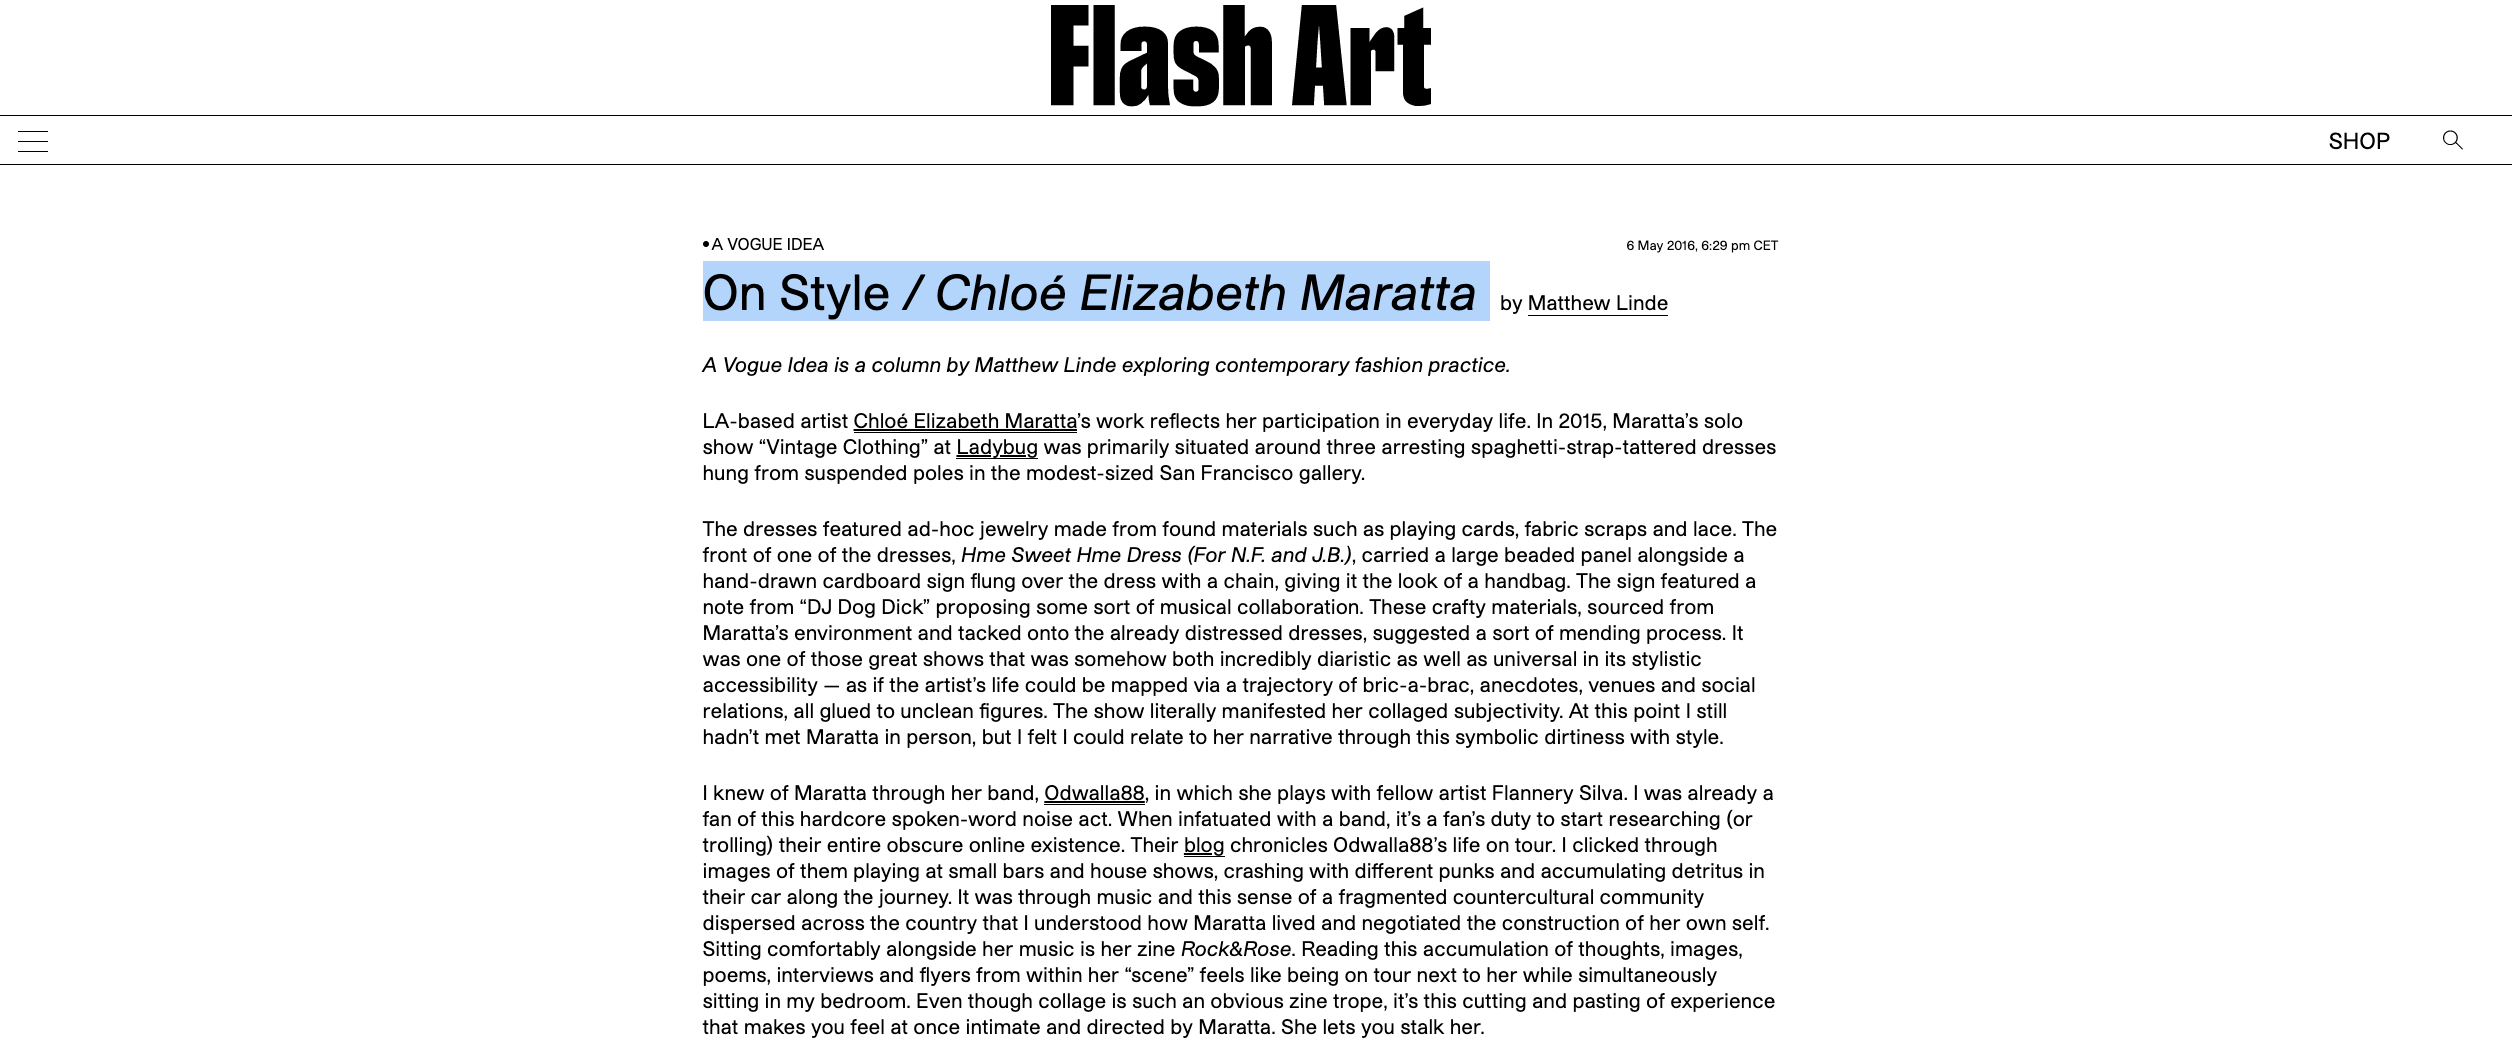 On Style / Chloé Elizabeth Maratta